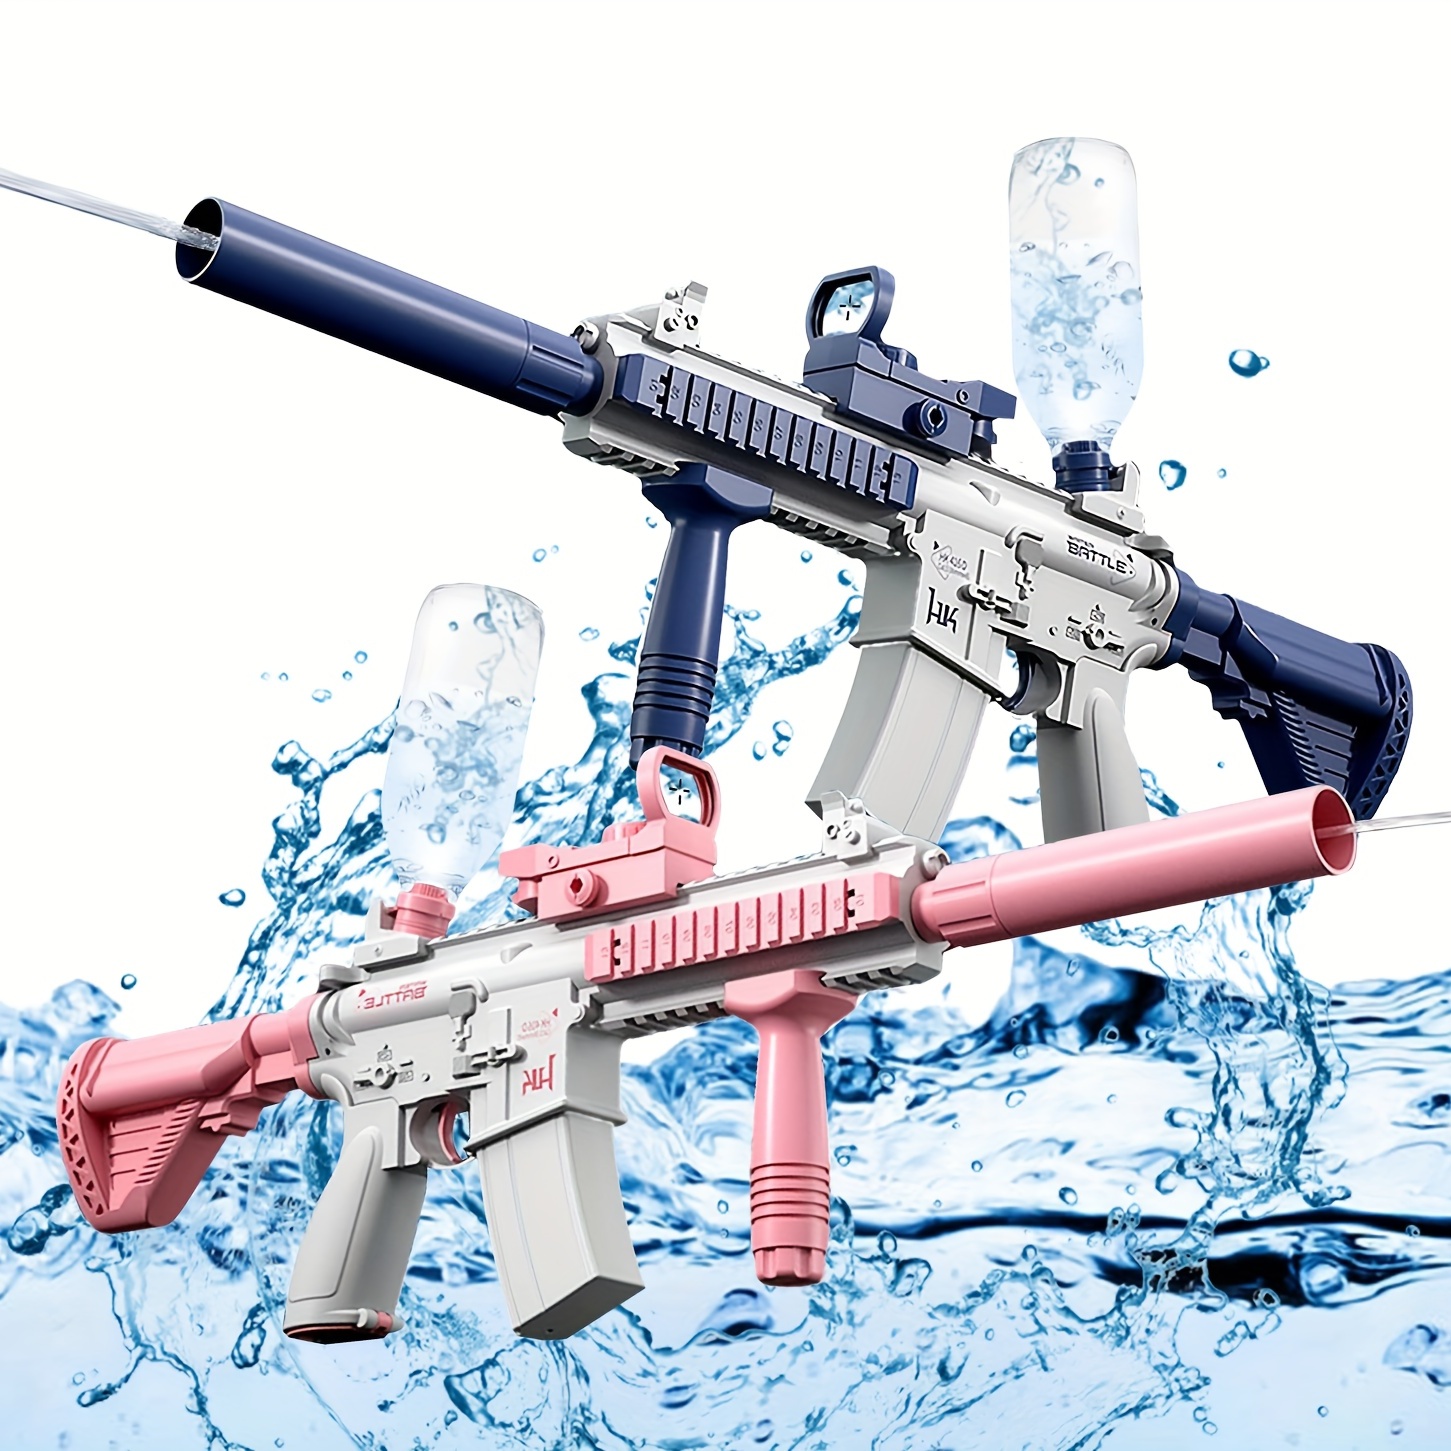 Squirt Gun Games Outdoor, Water Squirt Gun Games